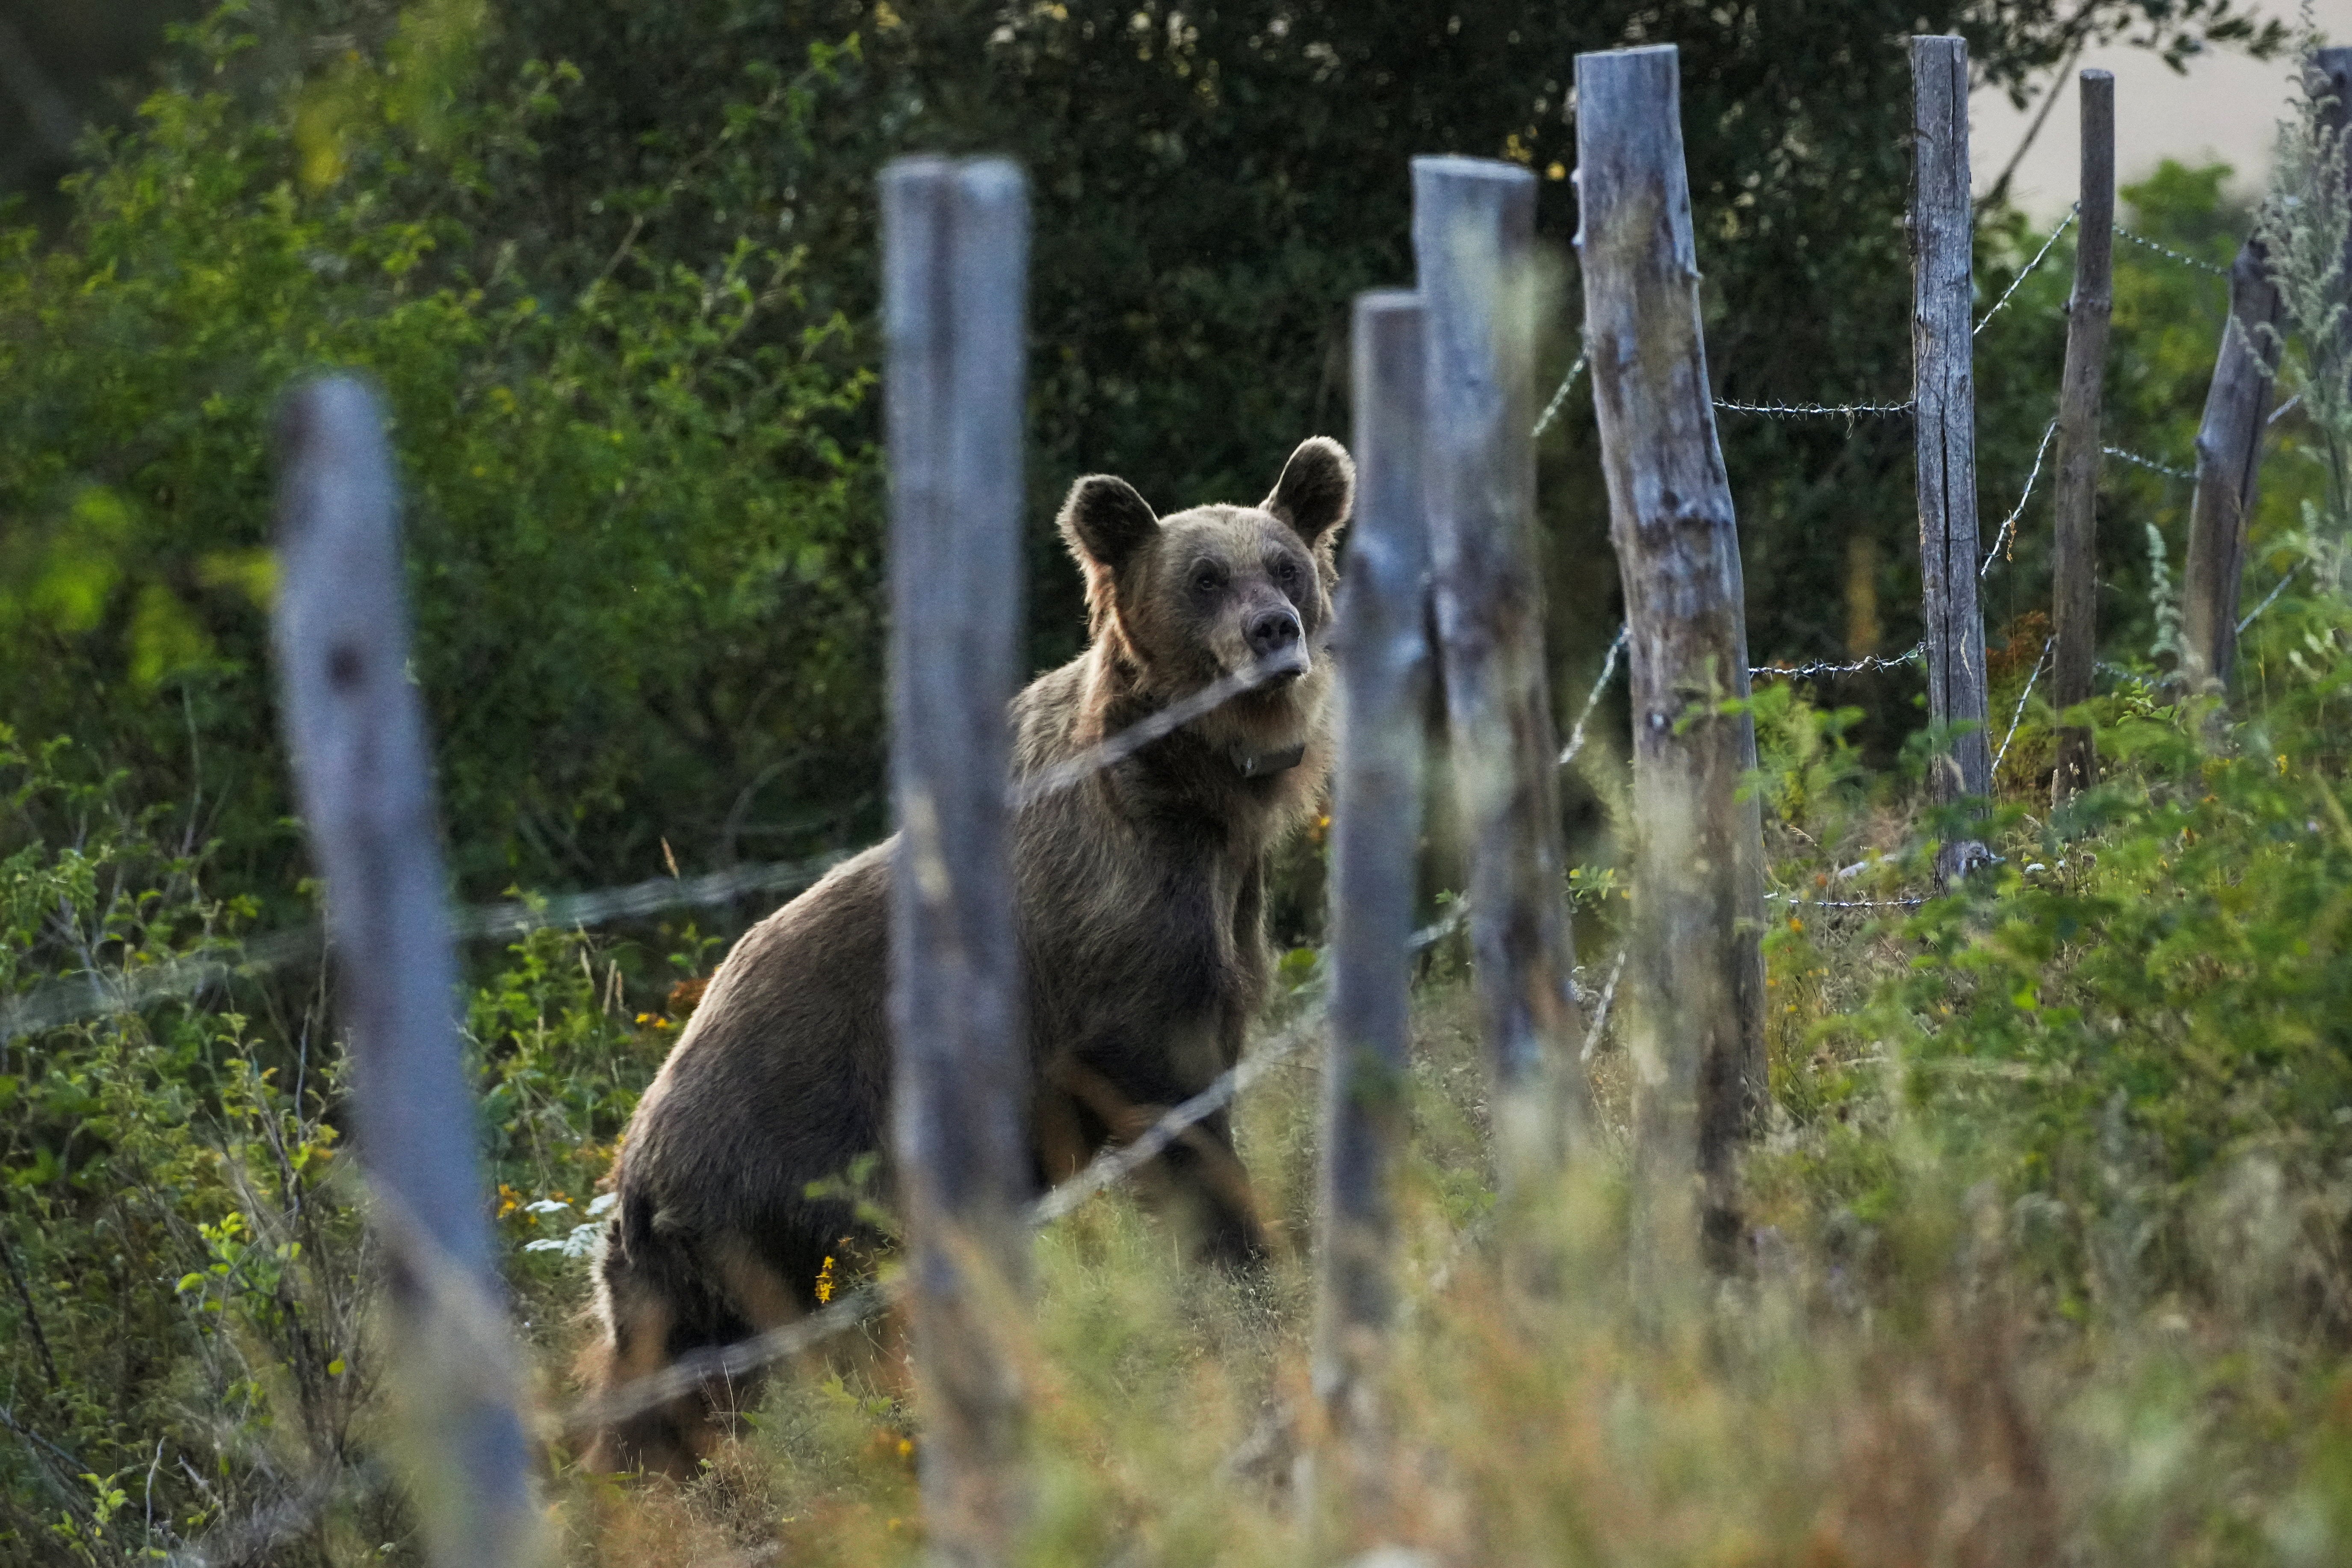 A female Iberian brown bear wearing a GPS collar on her neck walks, in Villar de Santiago, Spain